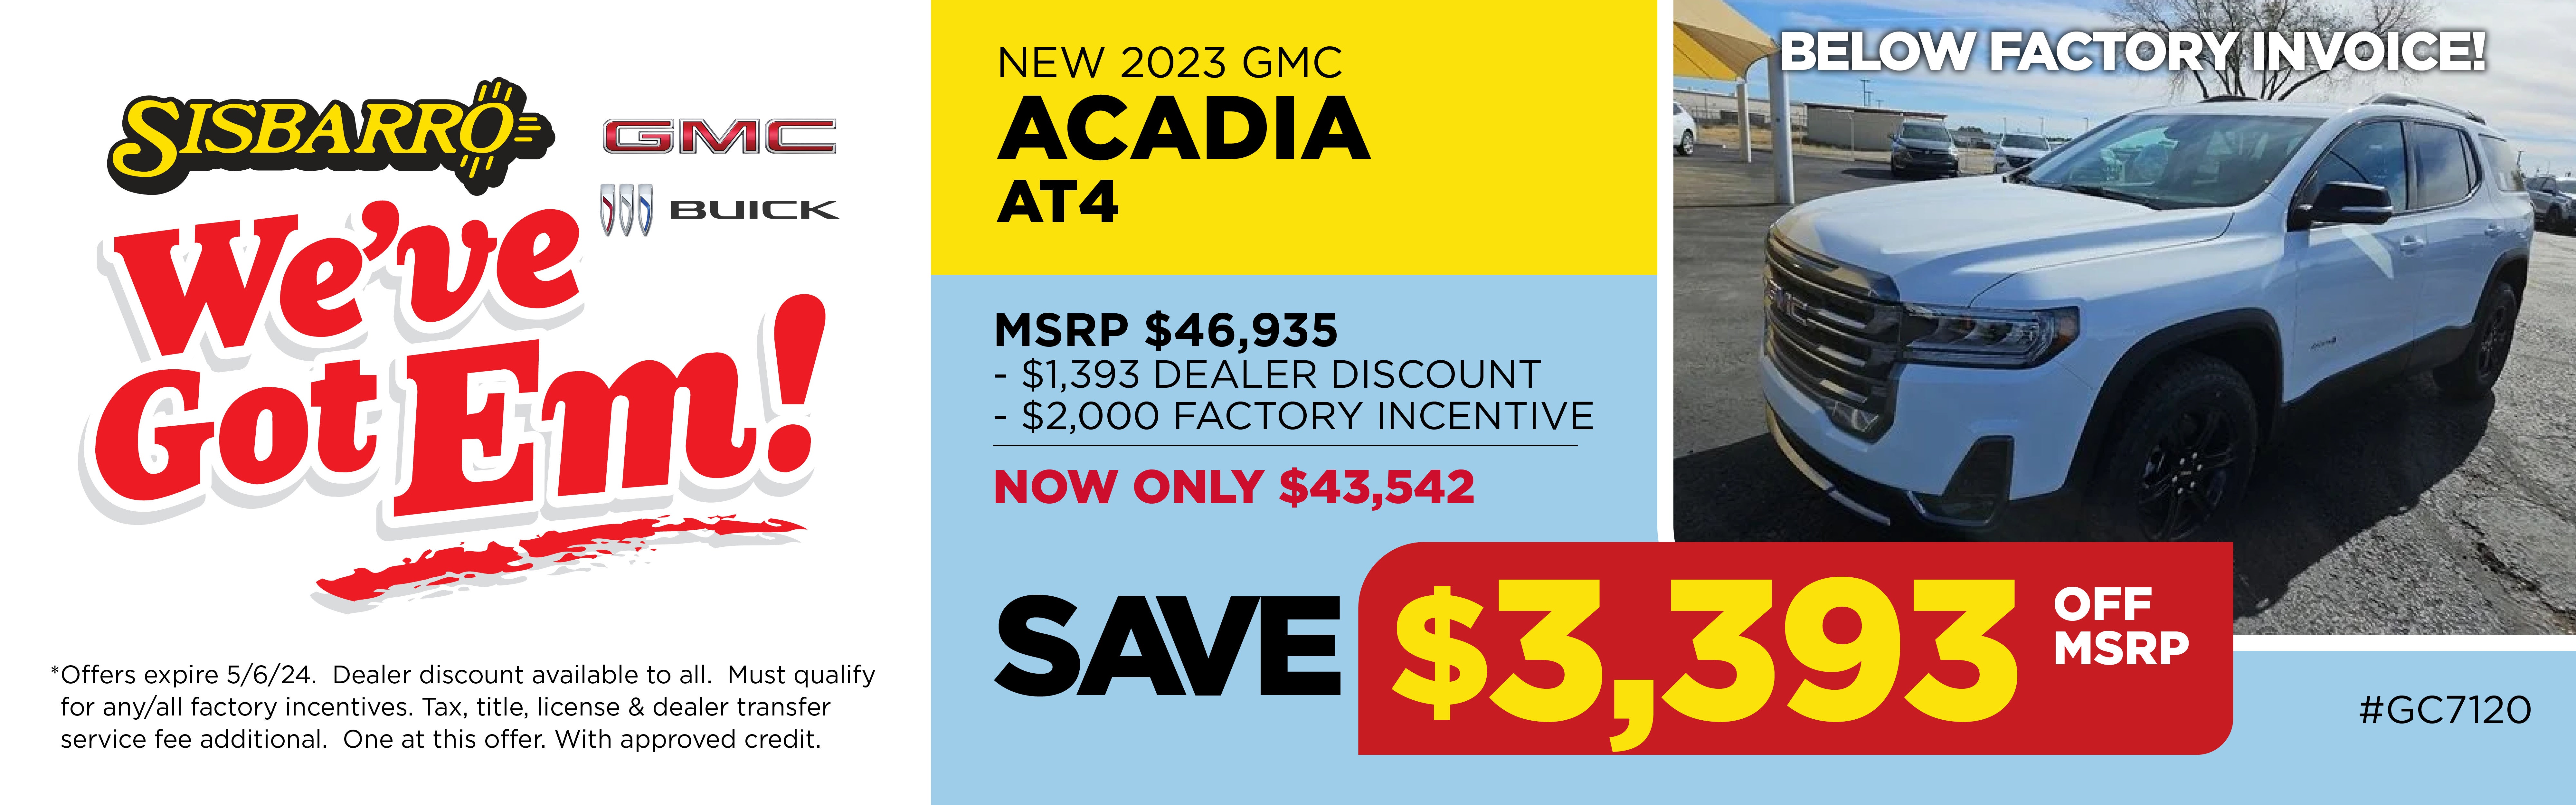 New 2023 GMC Acadia AT4